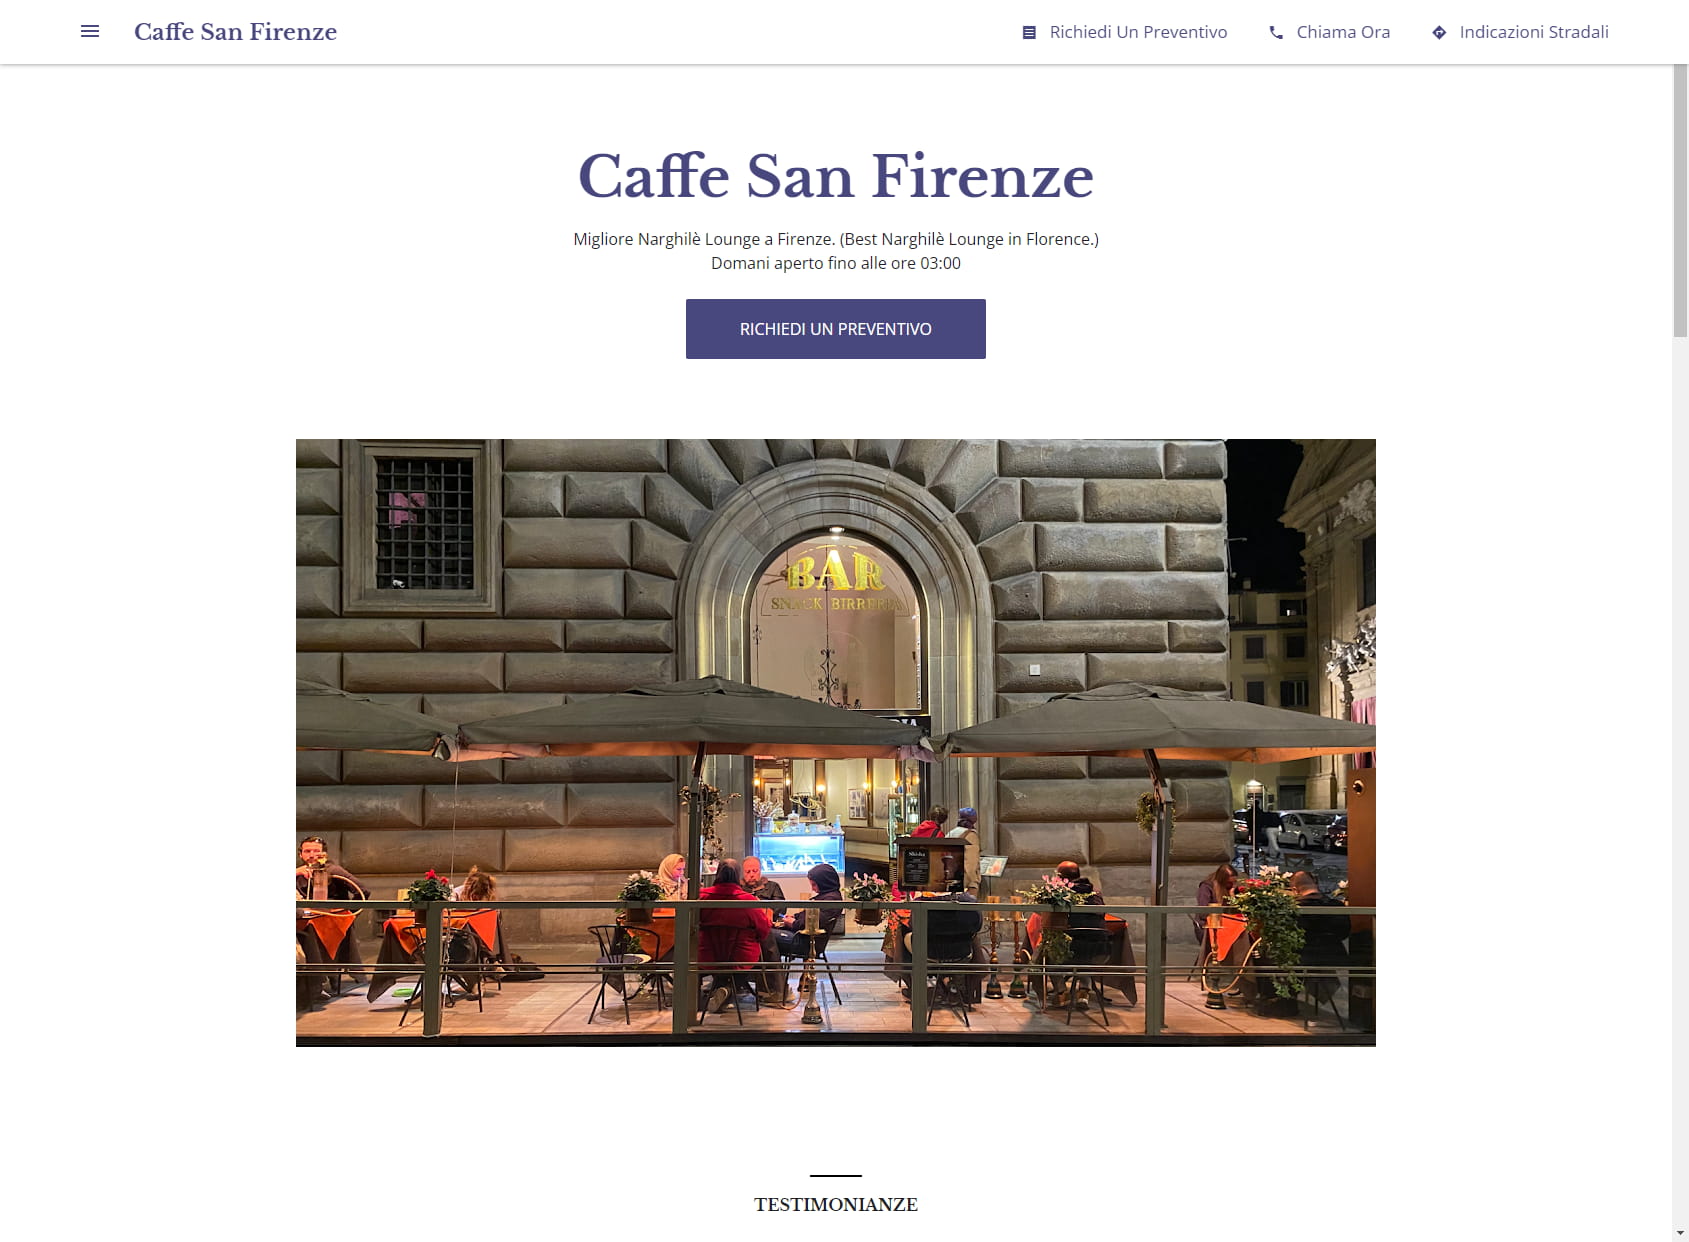 Caffe San Firenze